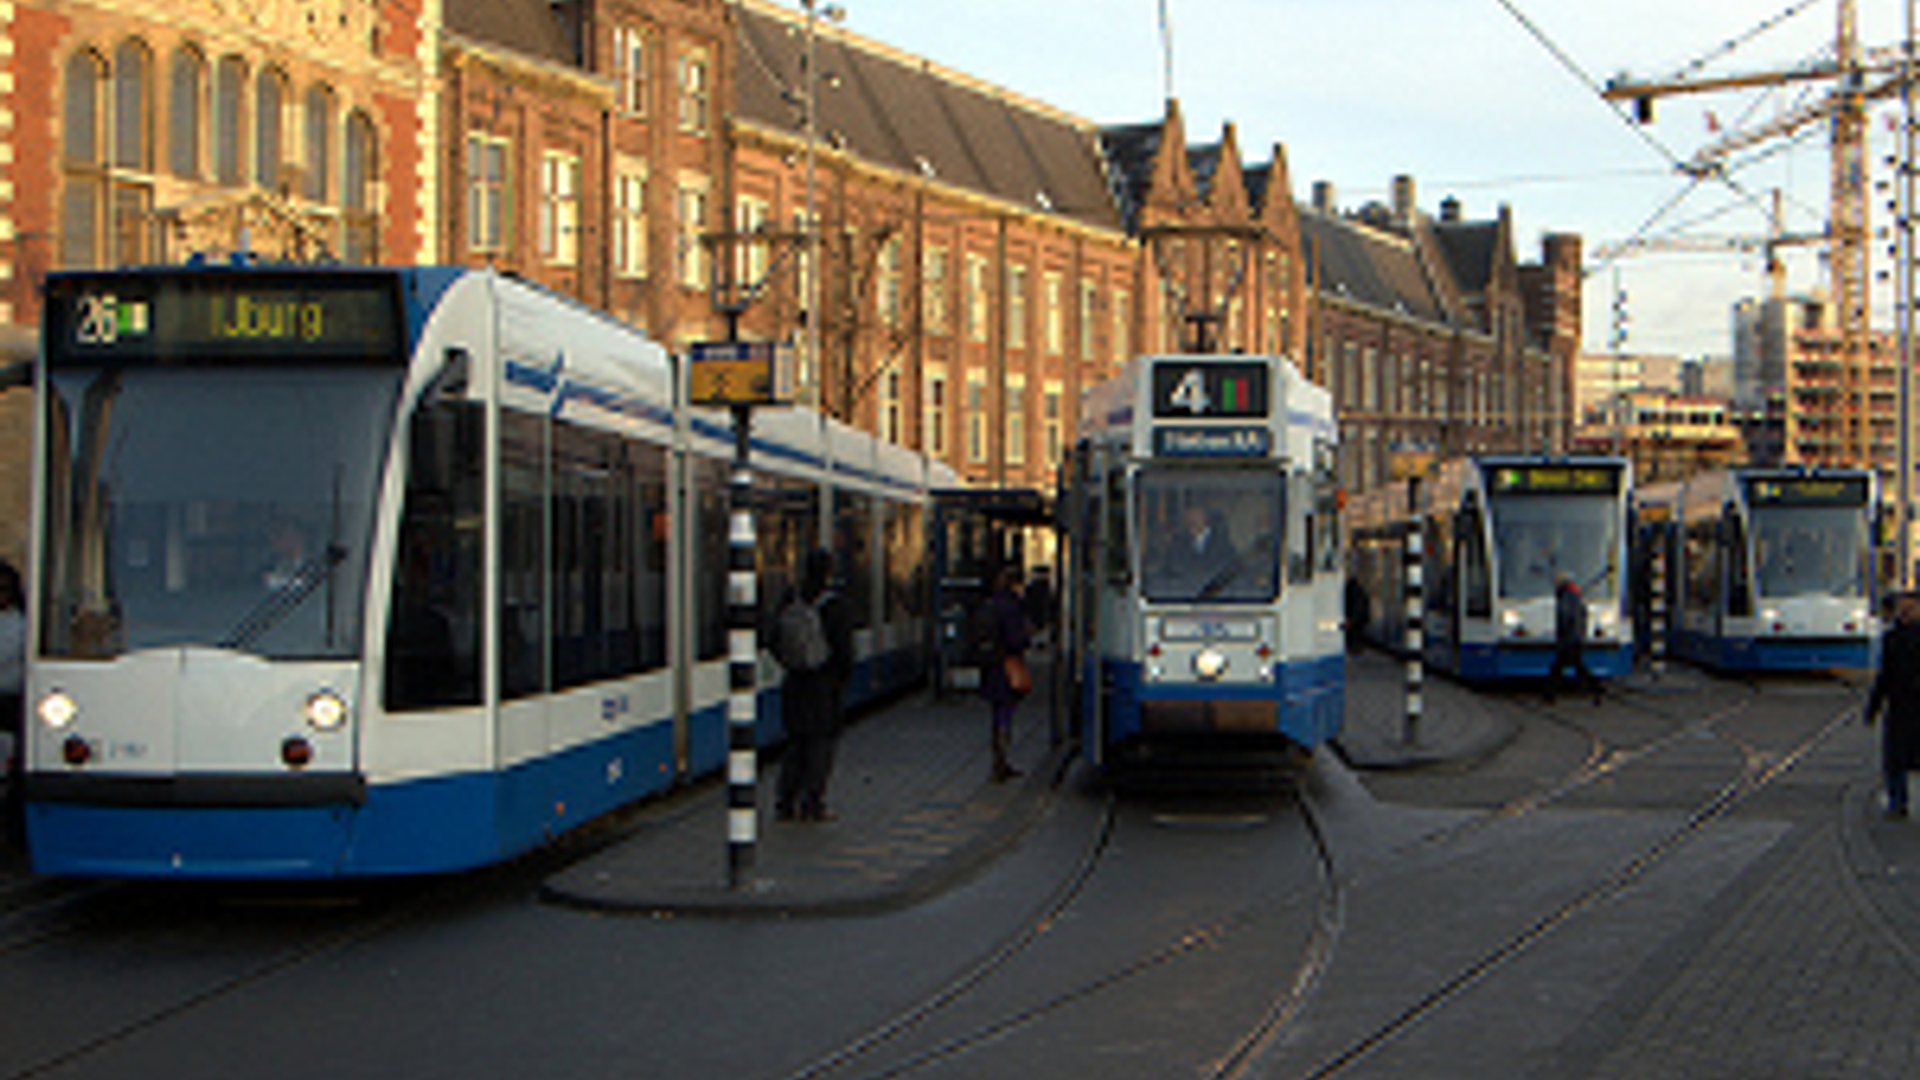 trams300.jpg